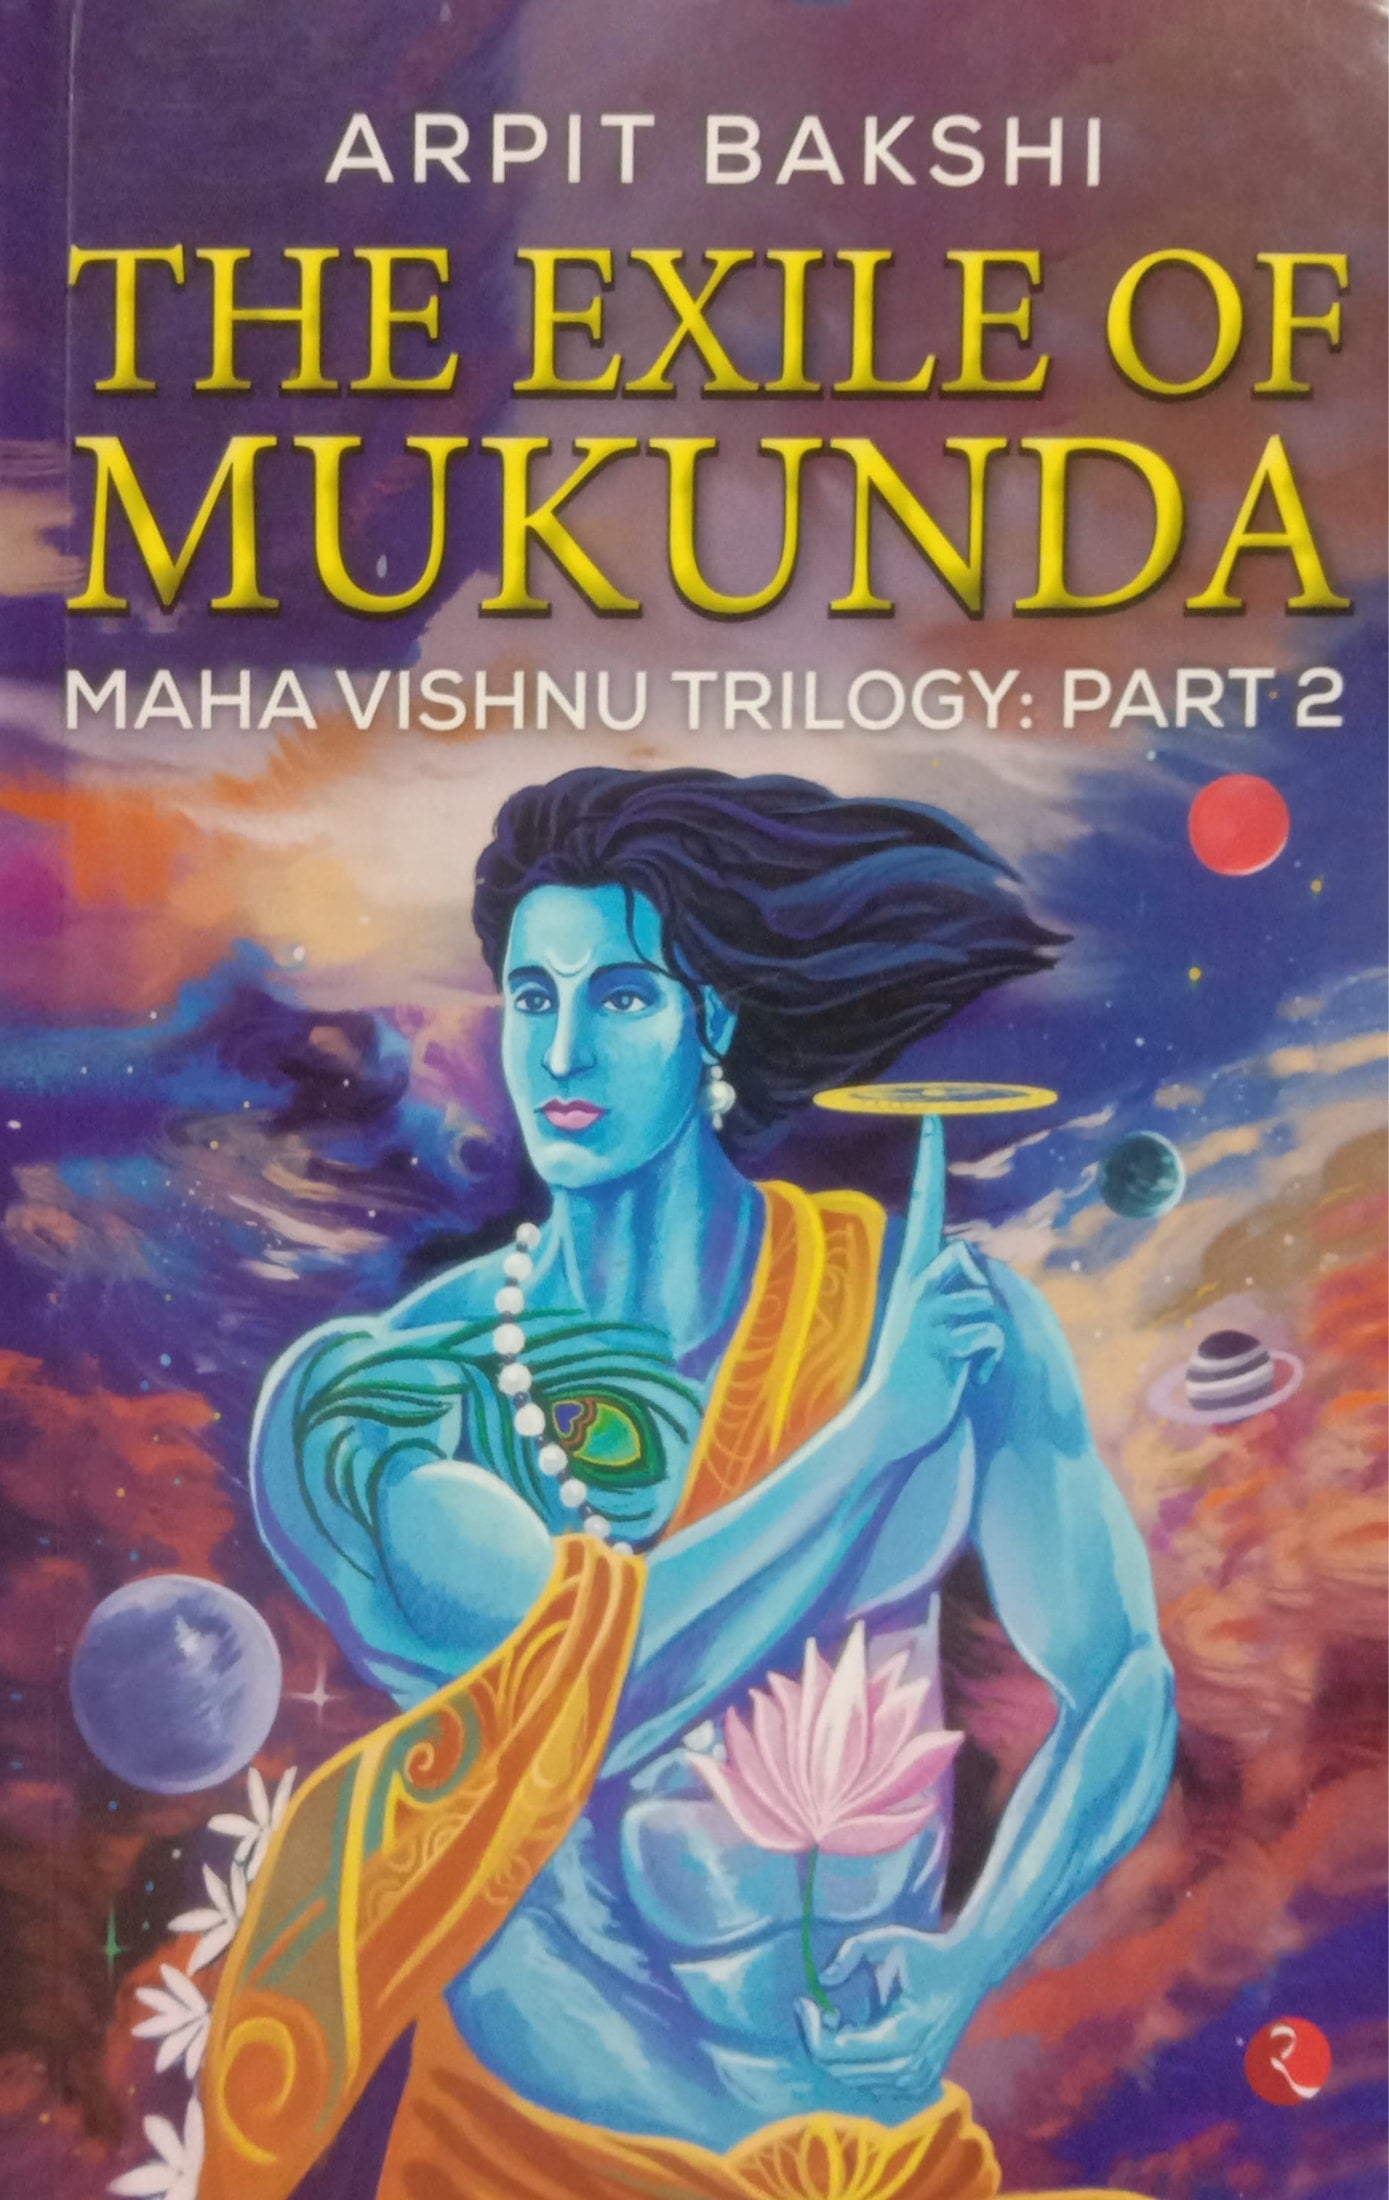 THE EXILE OF MUKUNDA - Maha vishnu thrilogy : part 2